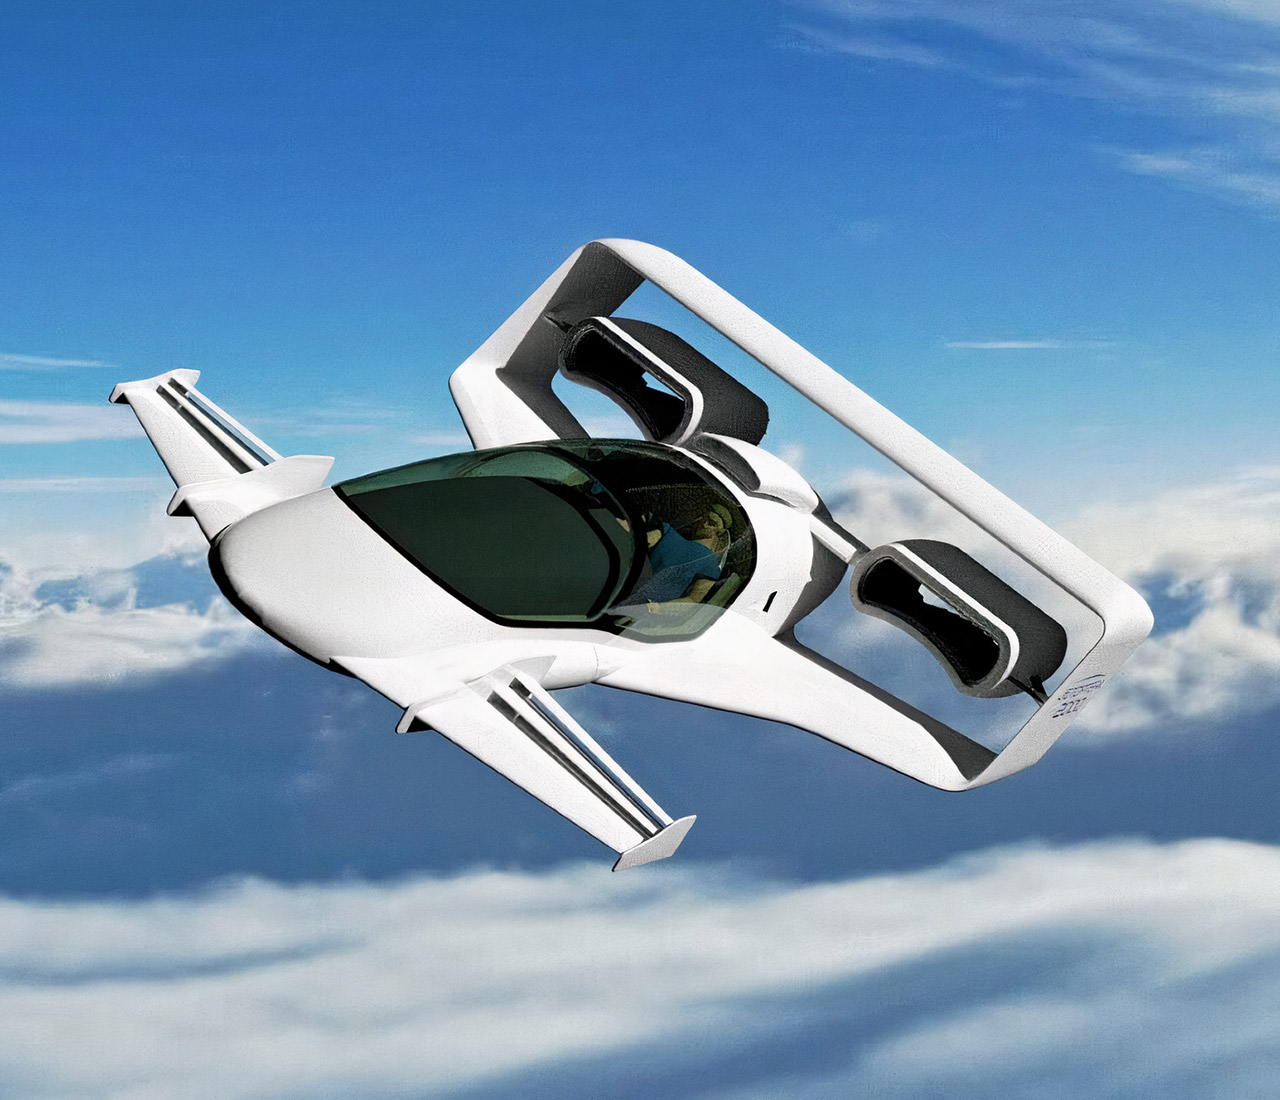 Empresa desenvolve carro voador elétrico sem hélices que utiliza propulsão fluídica